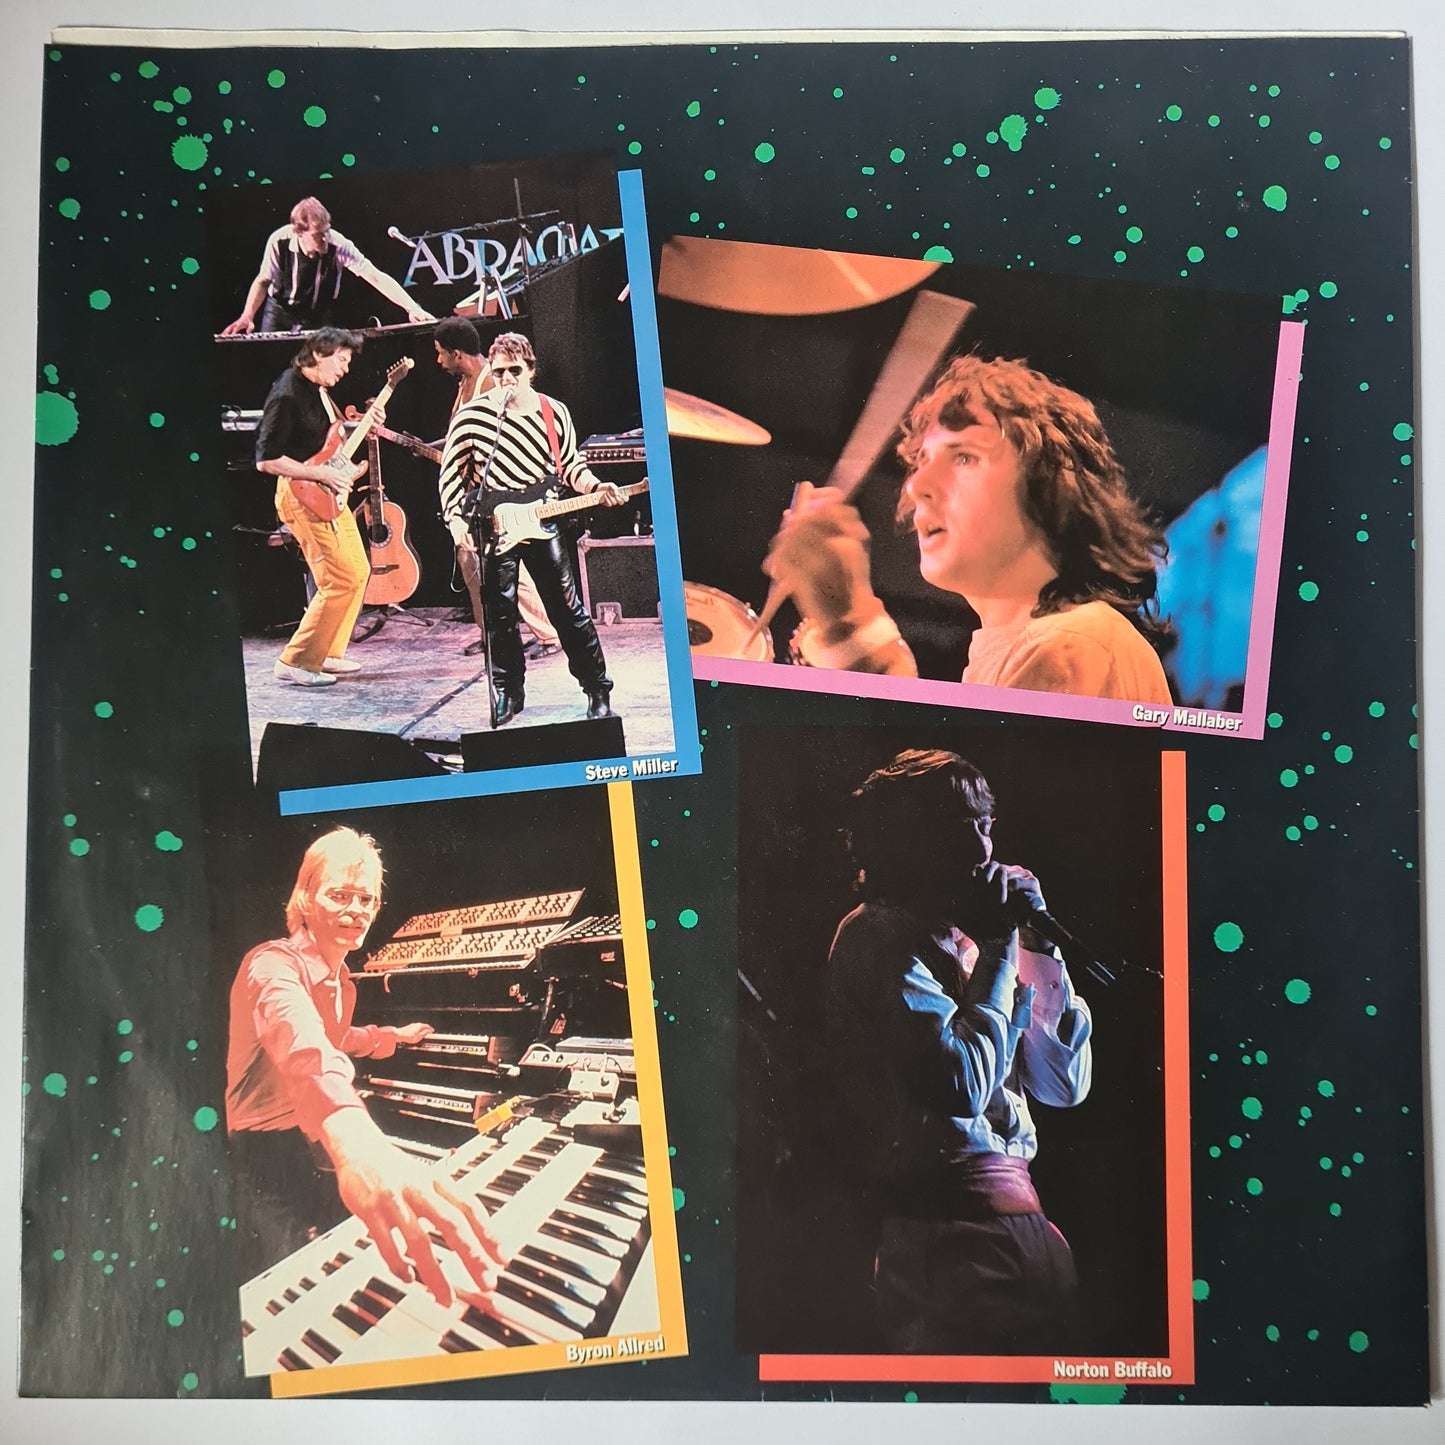 Steve Miller Band – Live! - 1983 - Vinyl Record